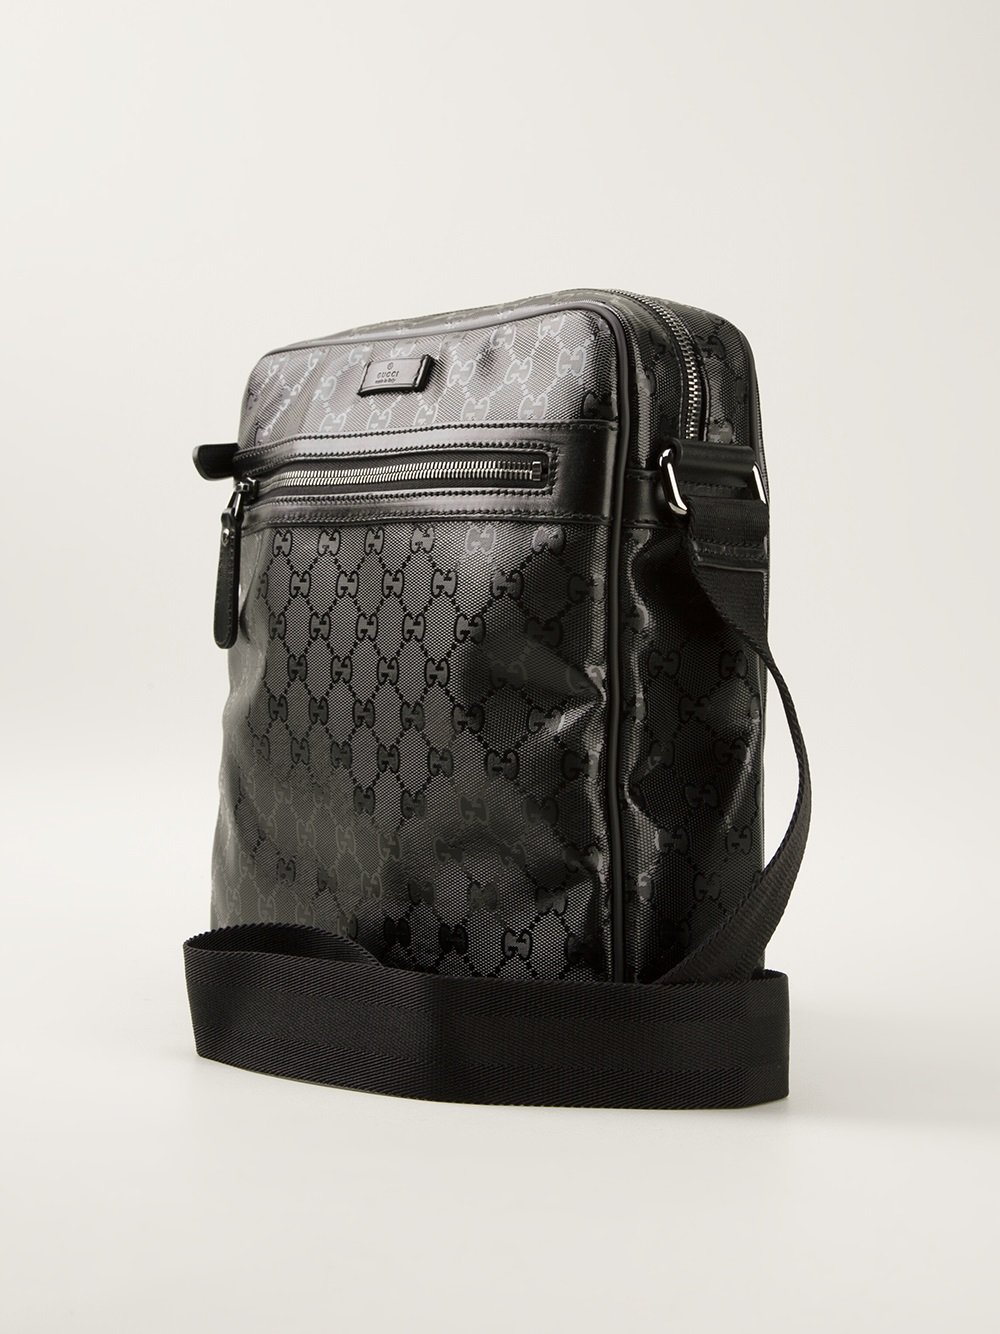 Lyst - Gucci Monogram Shoulder Bag in Black for Men